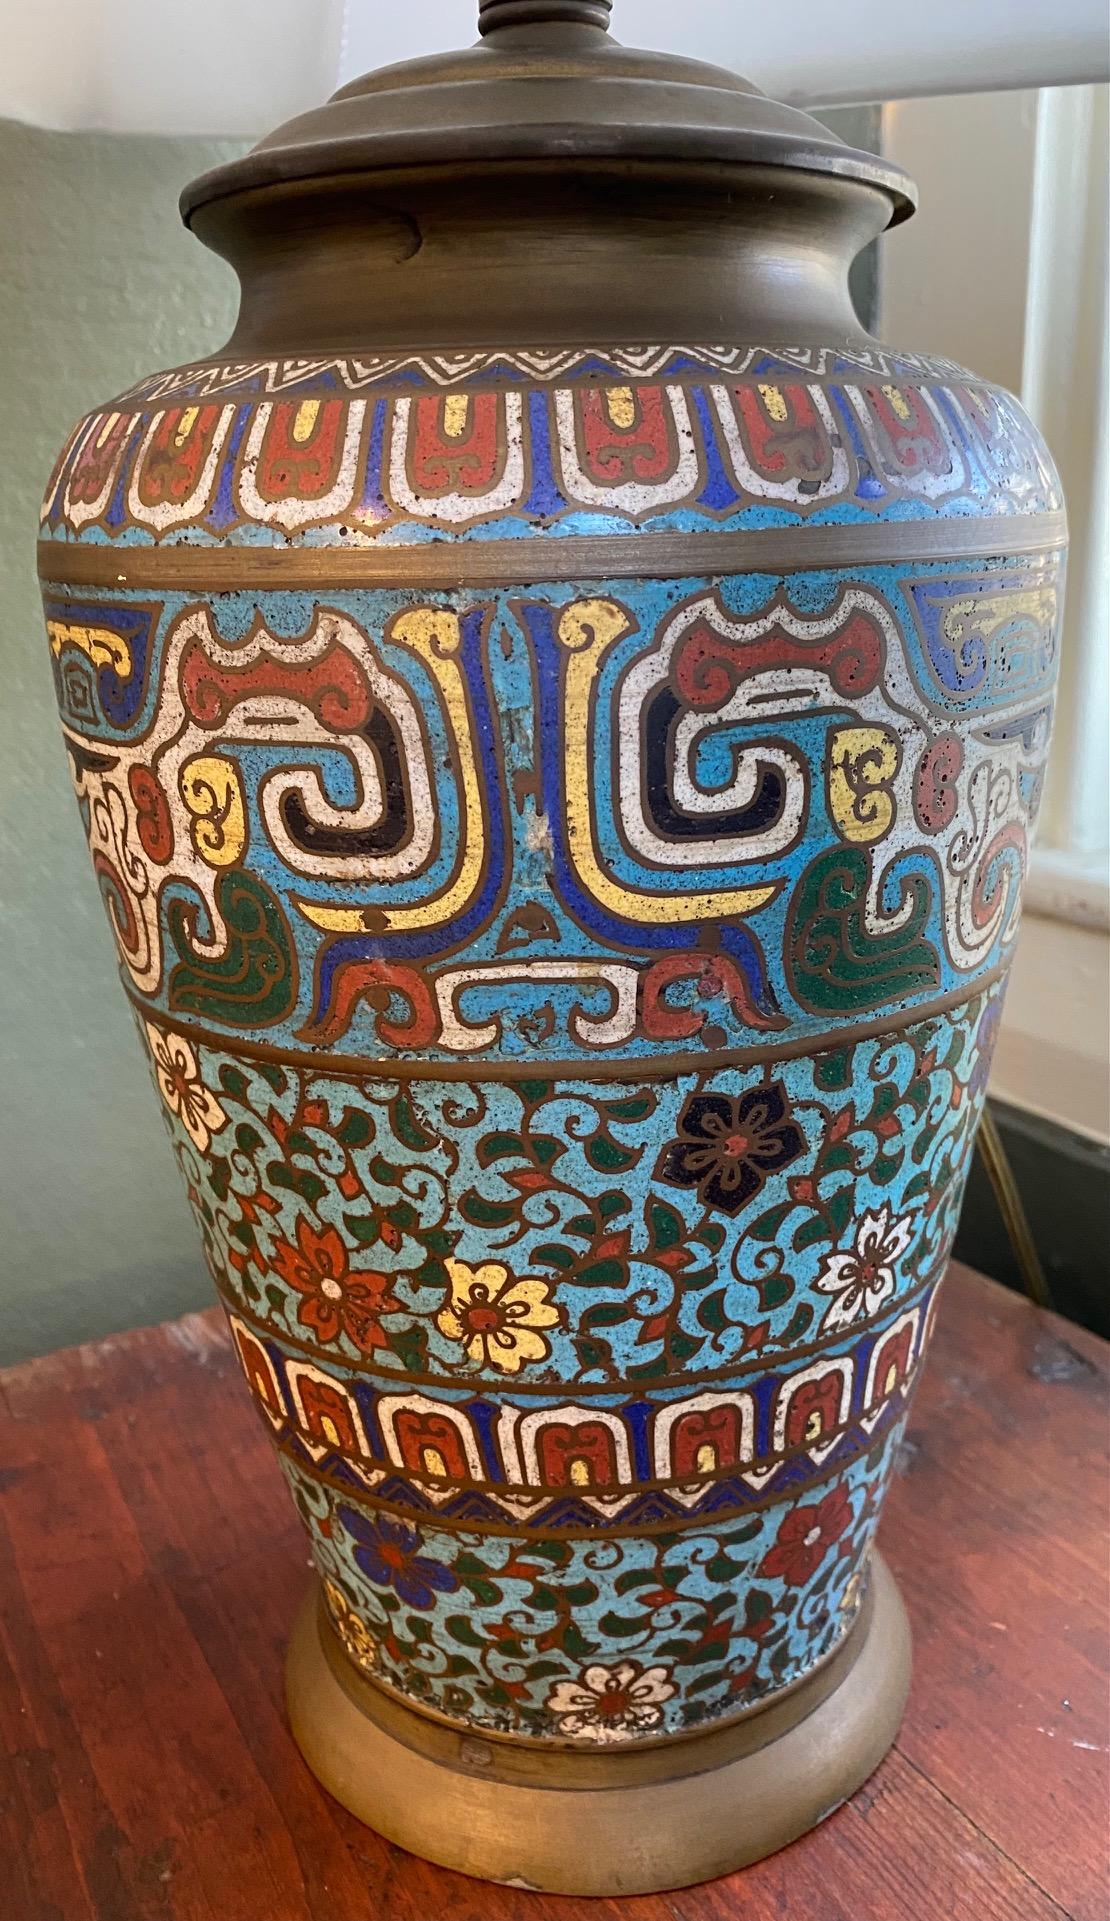 Lampe cloisonnée japonaise ancienne, vers 1910, avec incrustation d'émail bleu, rouge et jaune sur un vase en forme de balustre en laiton, montée comme une lampe de table et électrifiée ; estampillée 